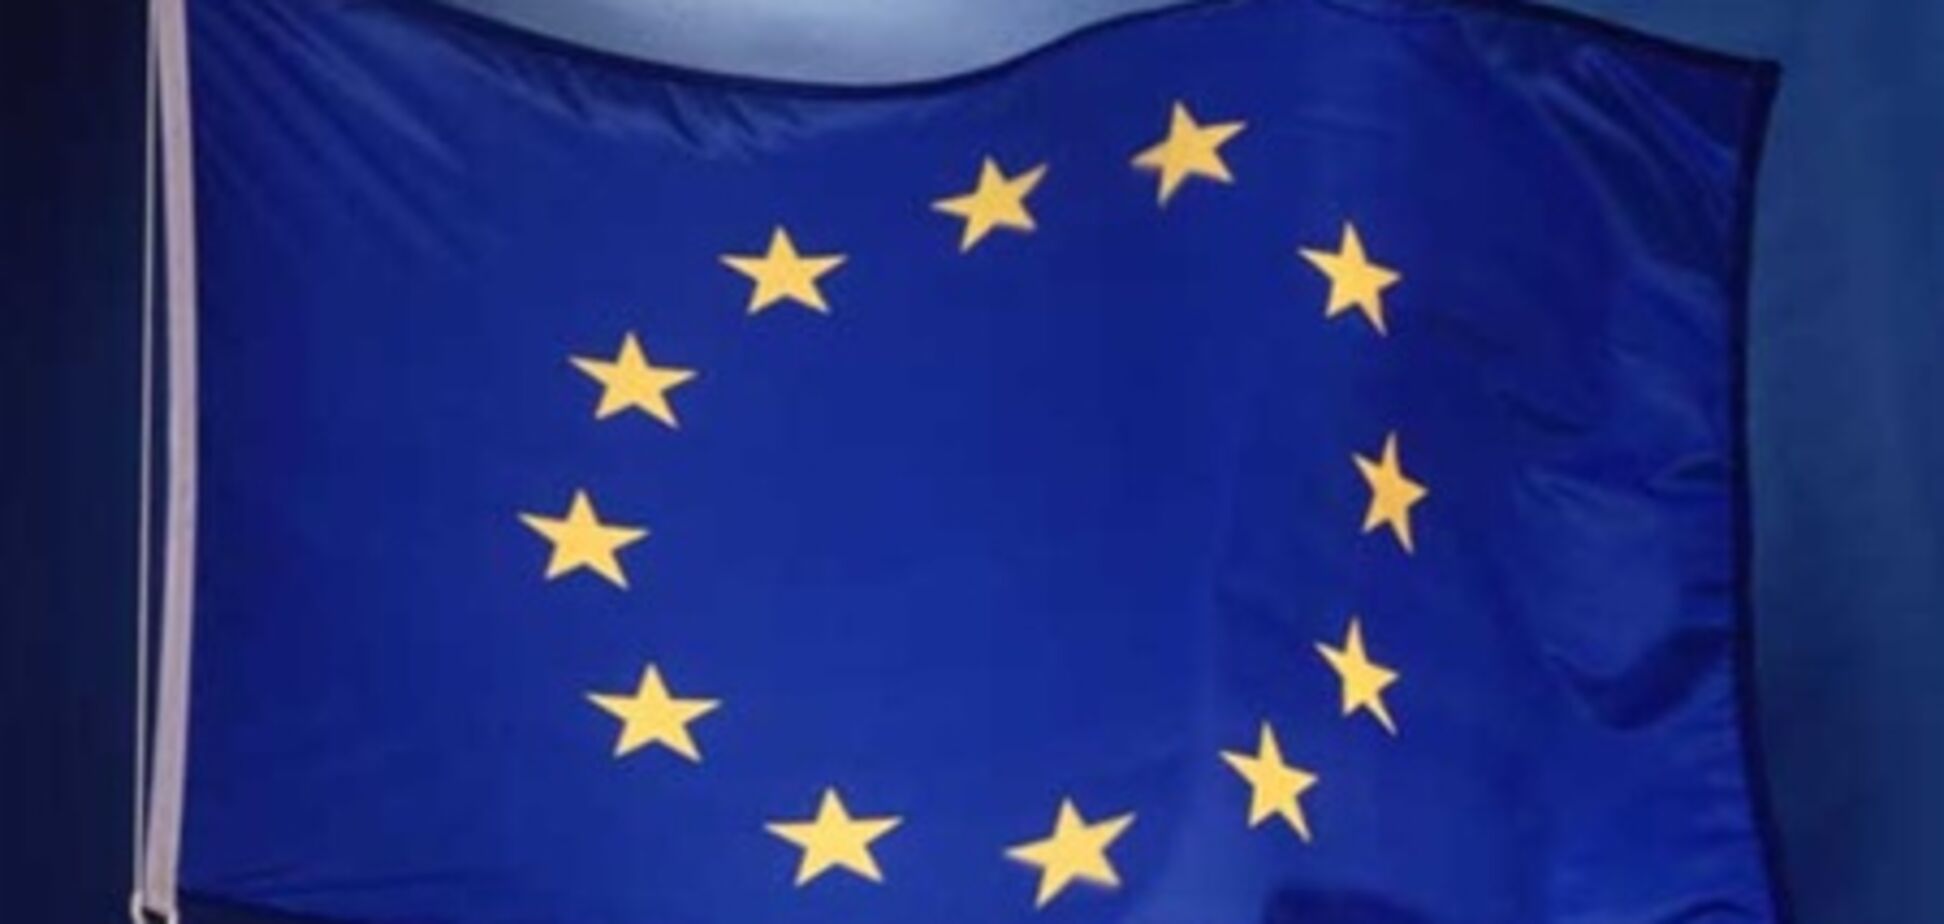 Греция выступает против членства Украины в Евросоюзе - посол